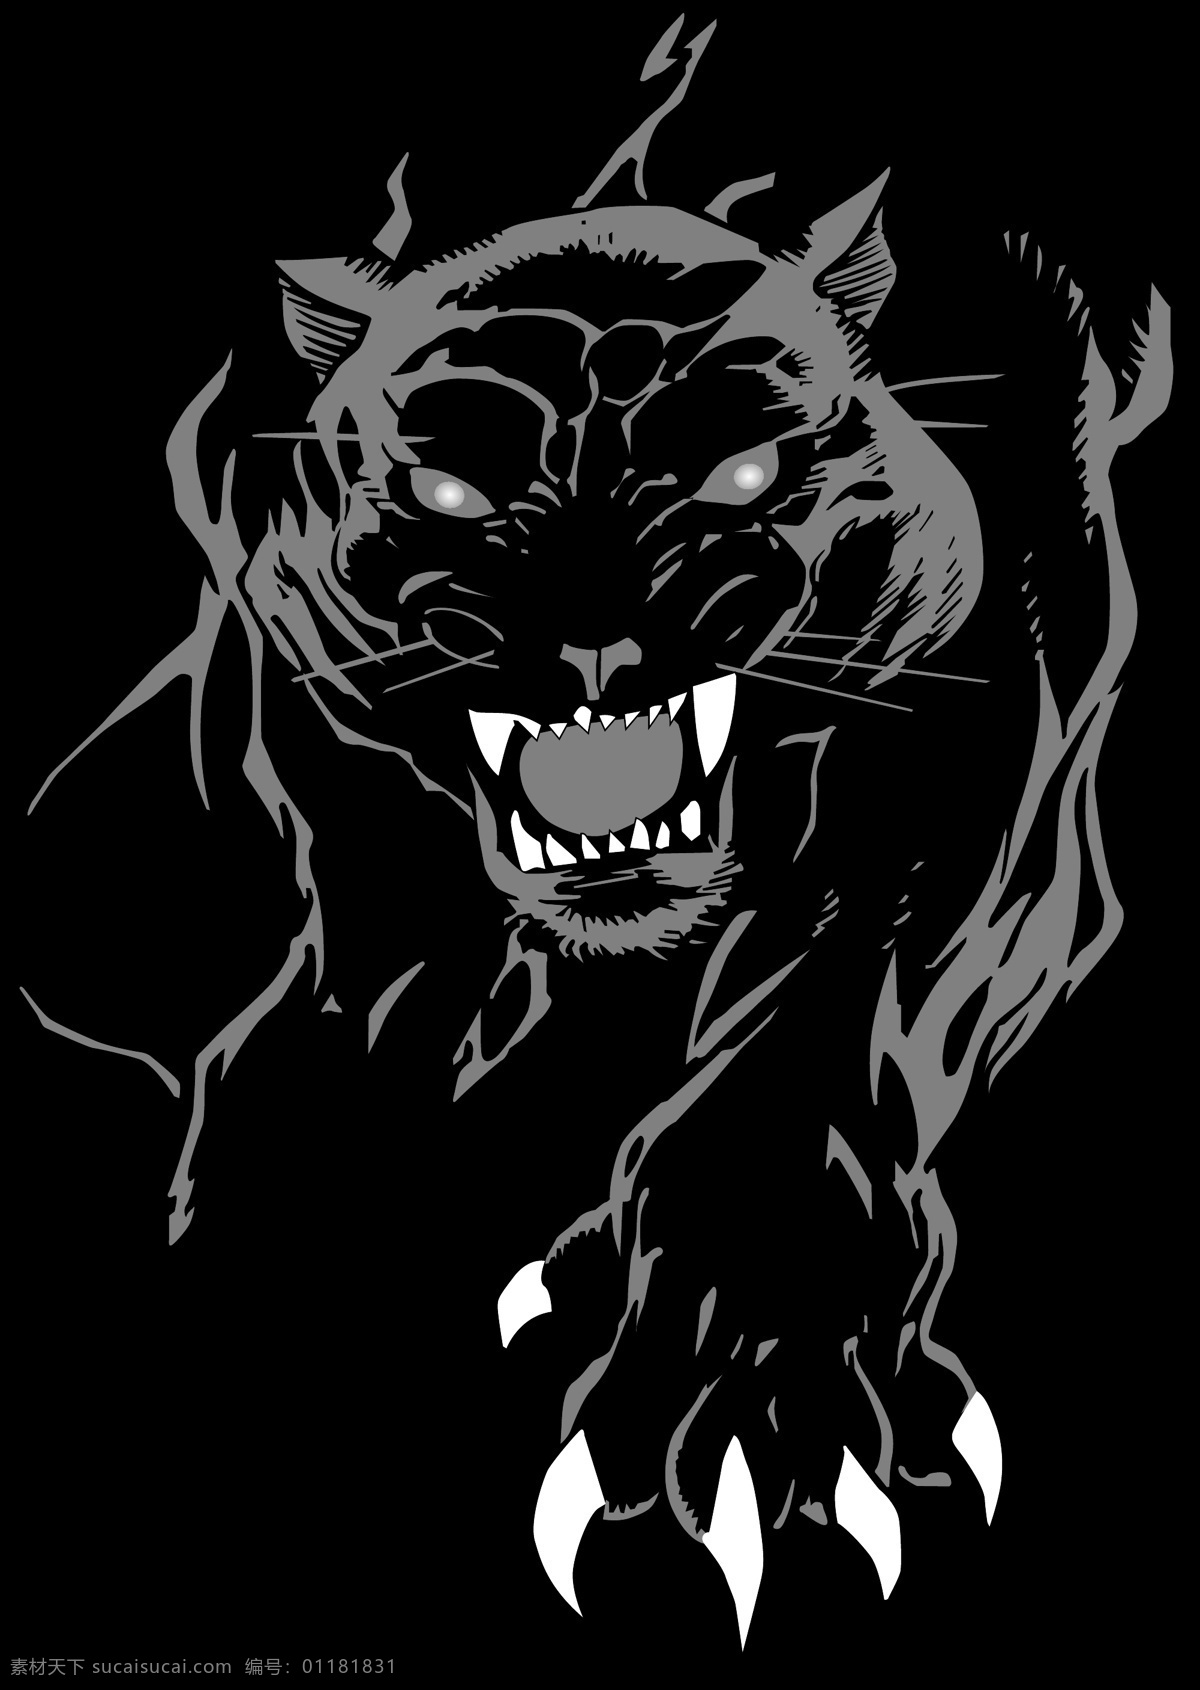 凶猛的黑豹 矢量动物 媒介 生物学 野性 材料 pantherferal 向量 黑色